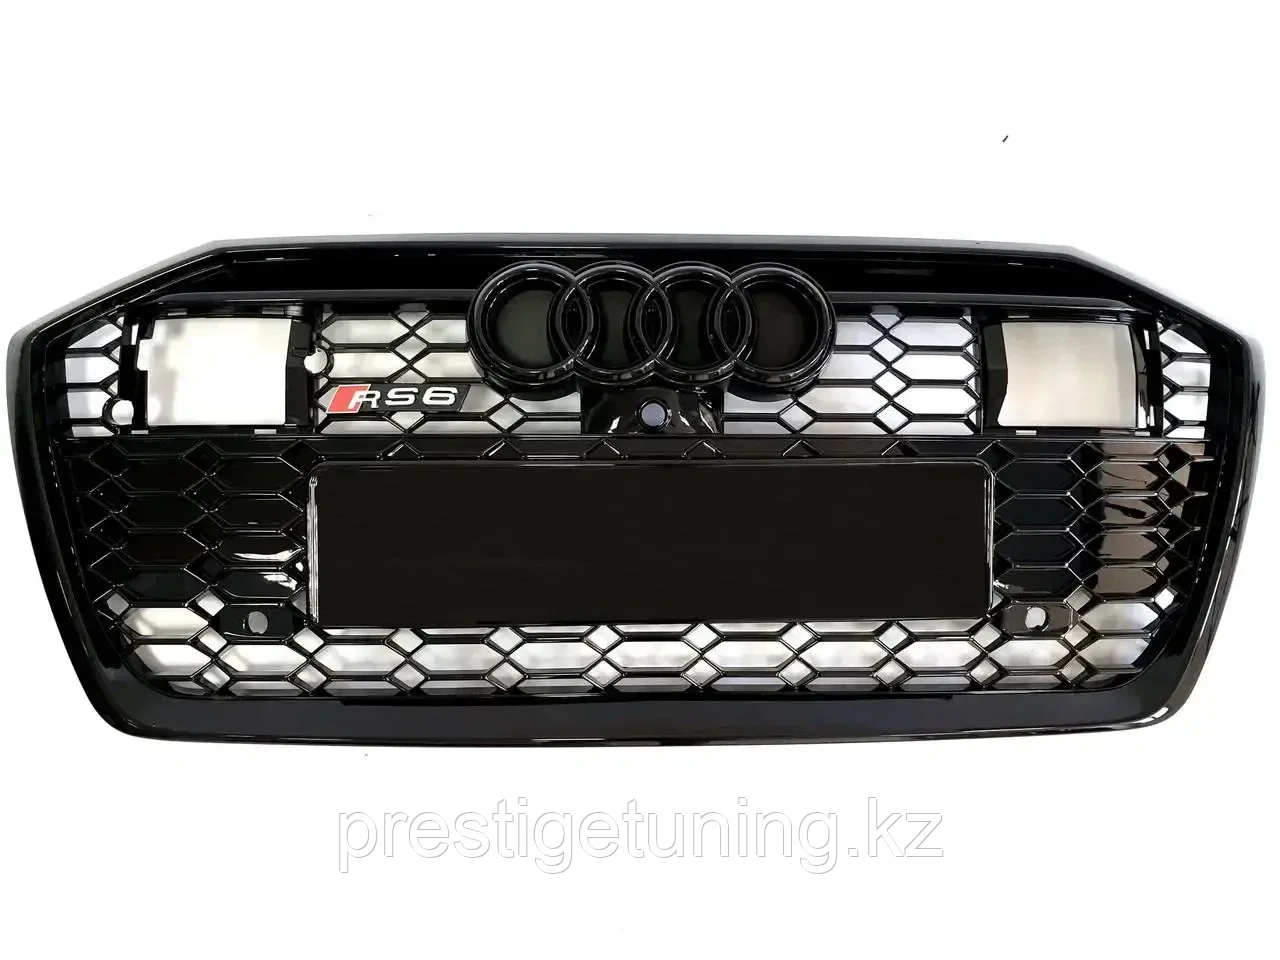 Решетка радиатора на Audi A6 V (C8) 2018-по н.в стиль RS6 (Черный цвет) под дистроник